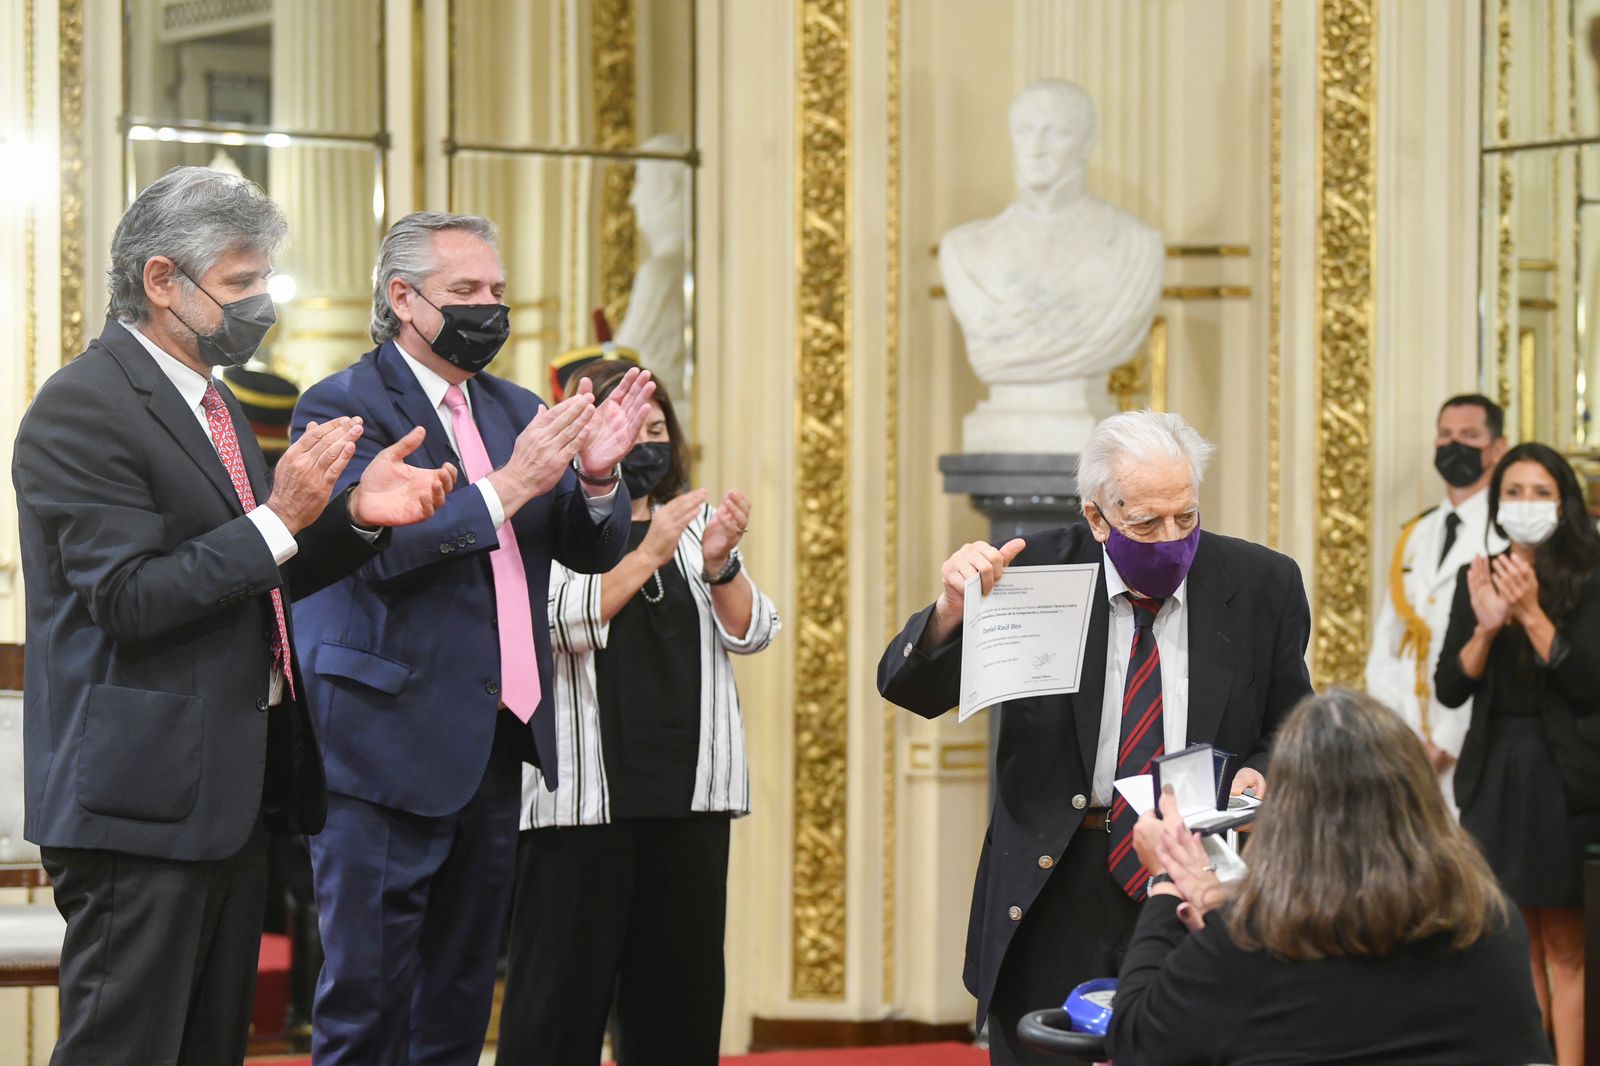 Le président a remis au scientifique Daniel Raúl Bes la distinction de chercheur de la nation argentine 2021 pour sa longue carrière en physique nucléaire